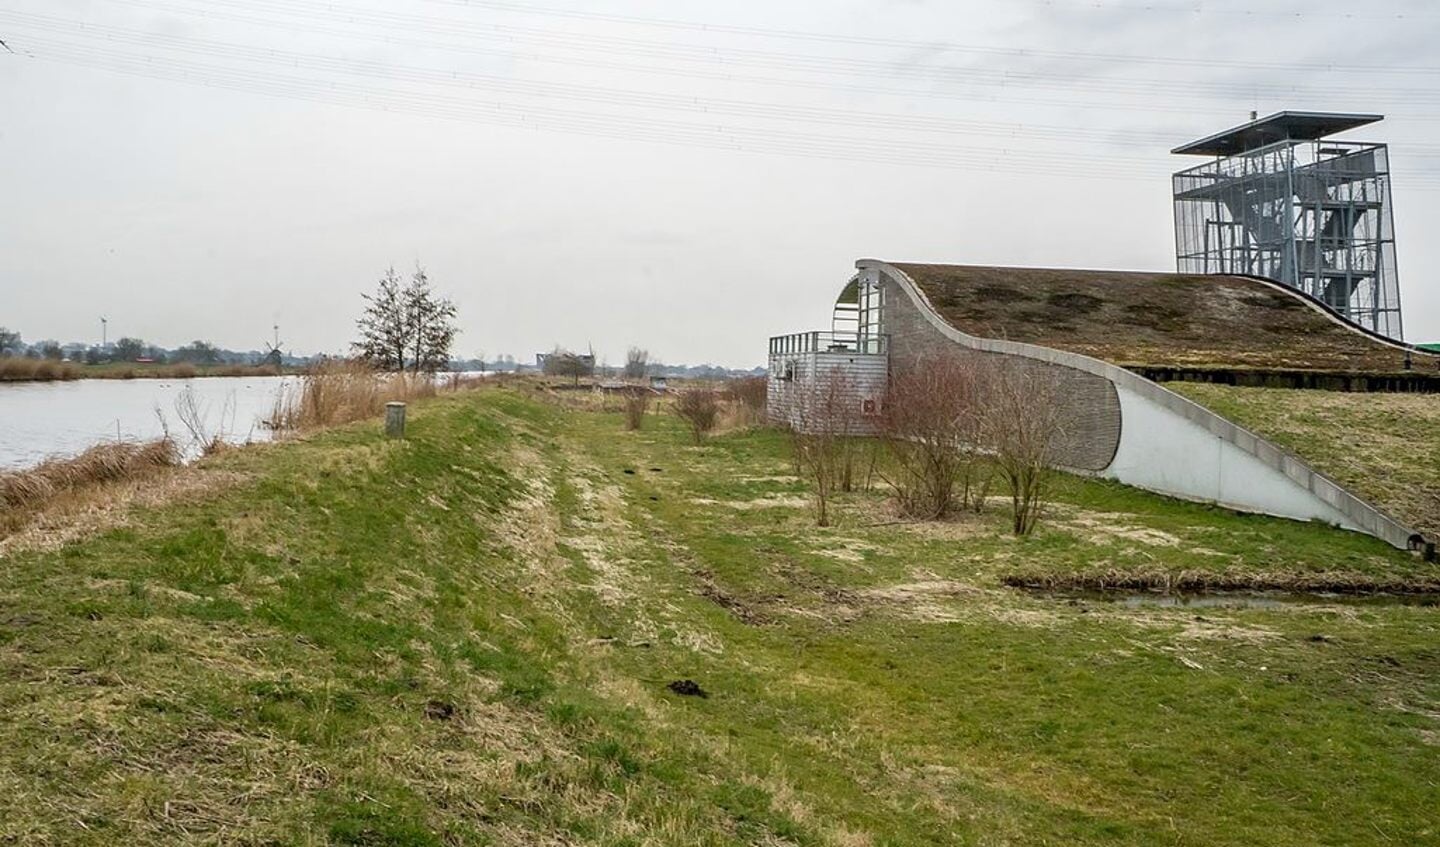 Het toekomstige 'landmark' ligt prachtig in de polder. Aan de kant van de rivier De Does moet een uitbouw komen met uitzicht op water en groen. 